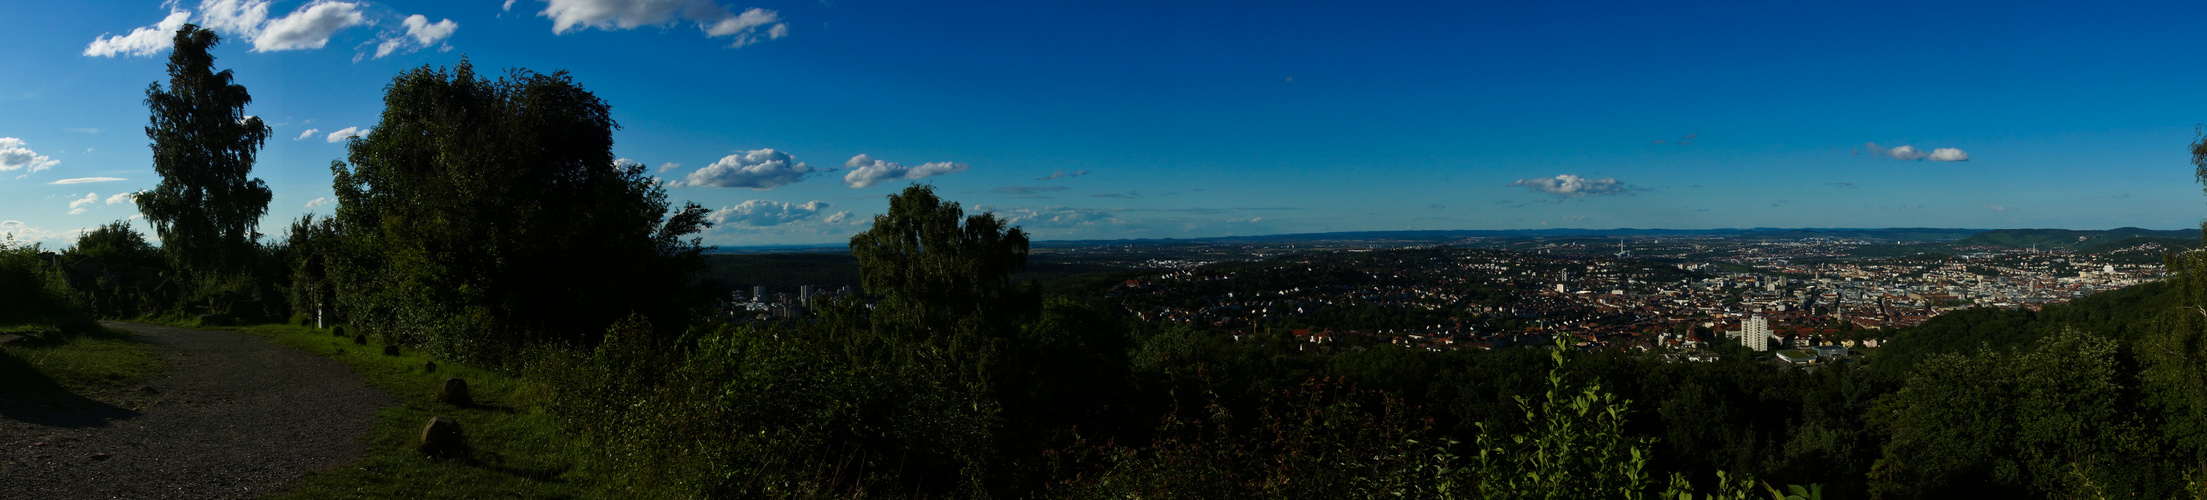 Blick auf Stuttgart vom Birkenkopf